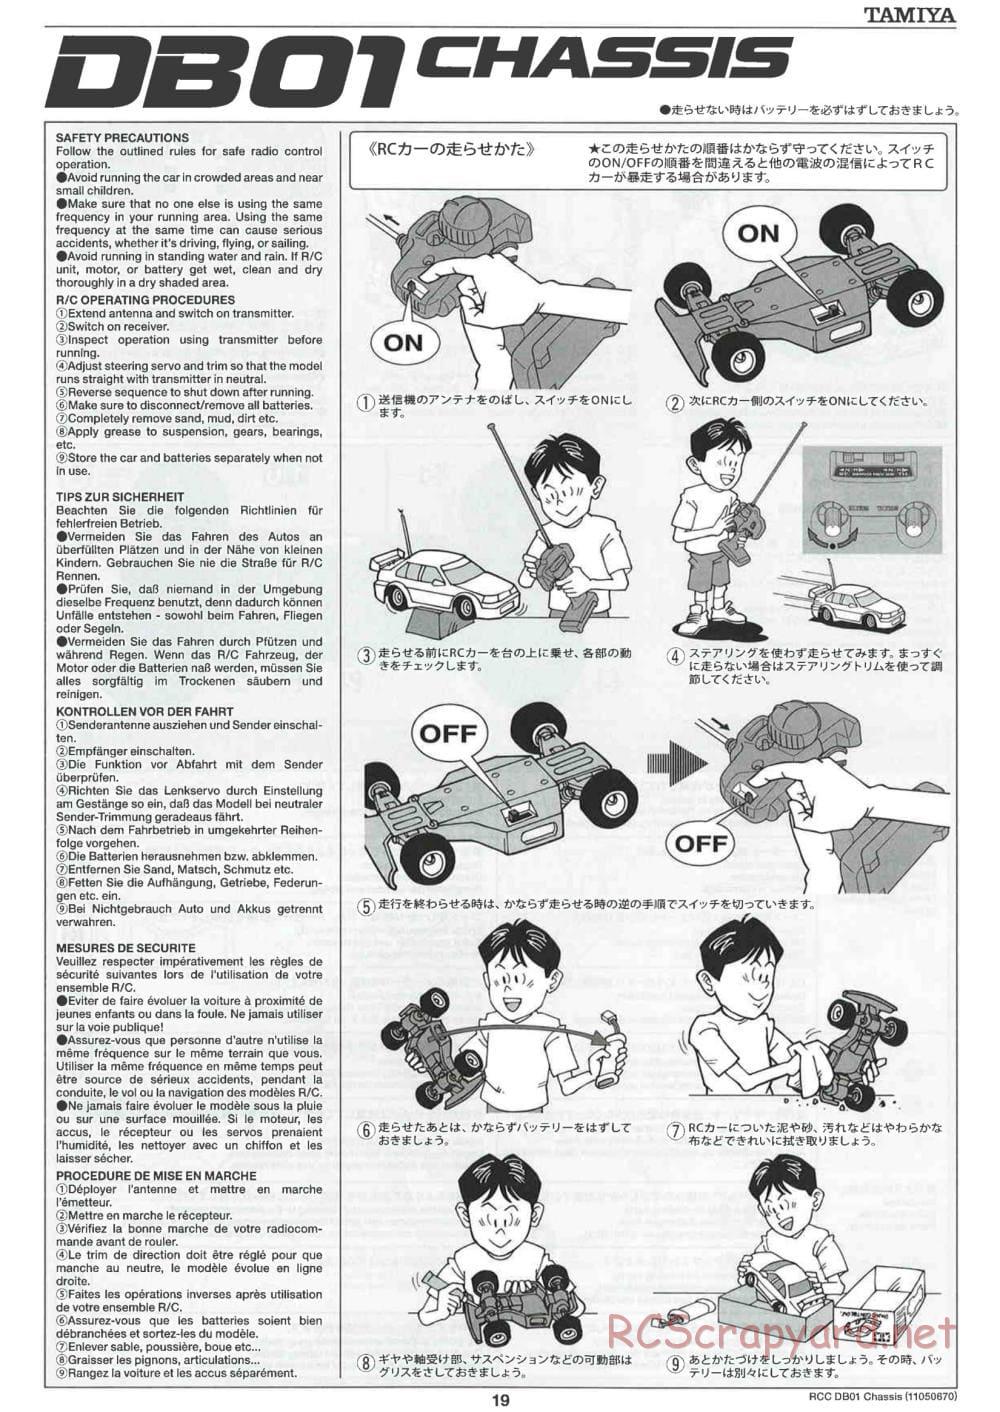 Tamiya - DB-01 Chassis - Manual - Page 19